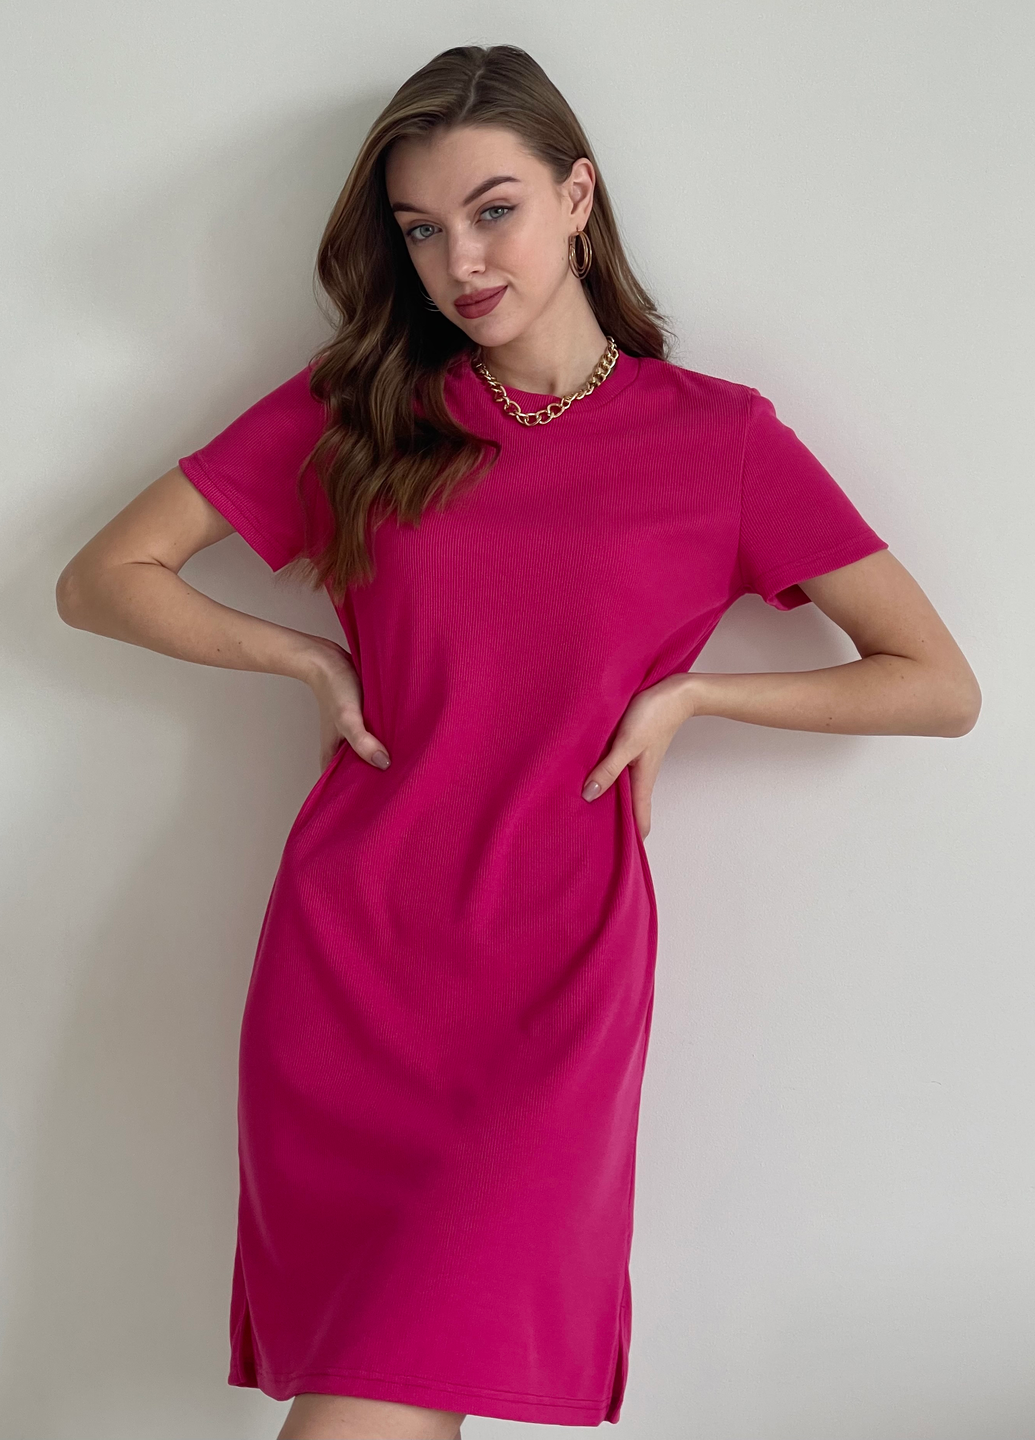 Купить Платье-футболка до колена в рубчик розовое Merlini Милан 700000148 размер 42-44 (S-M) в интернет-магазине